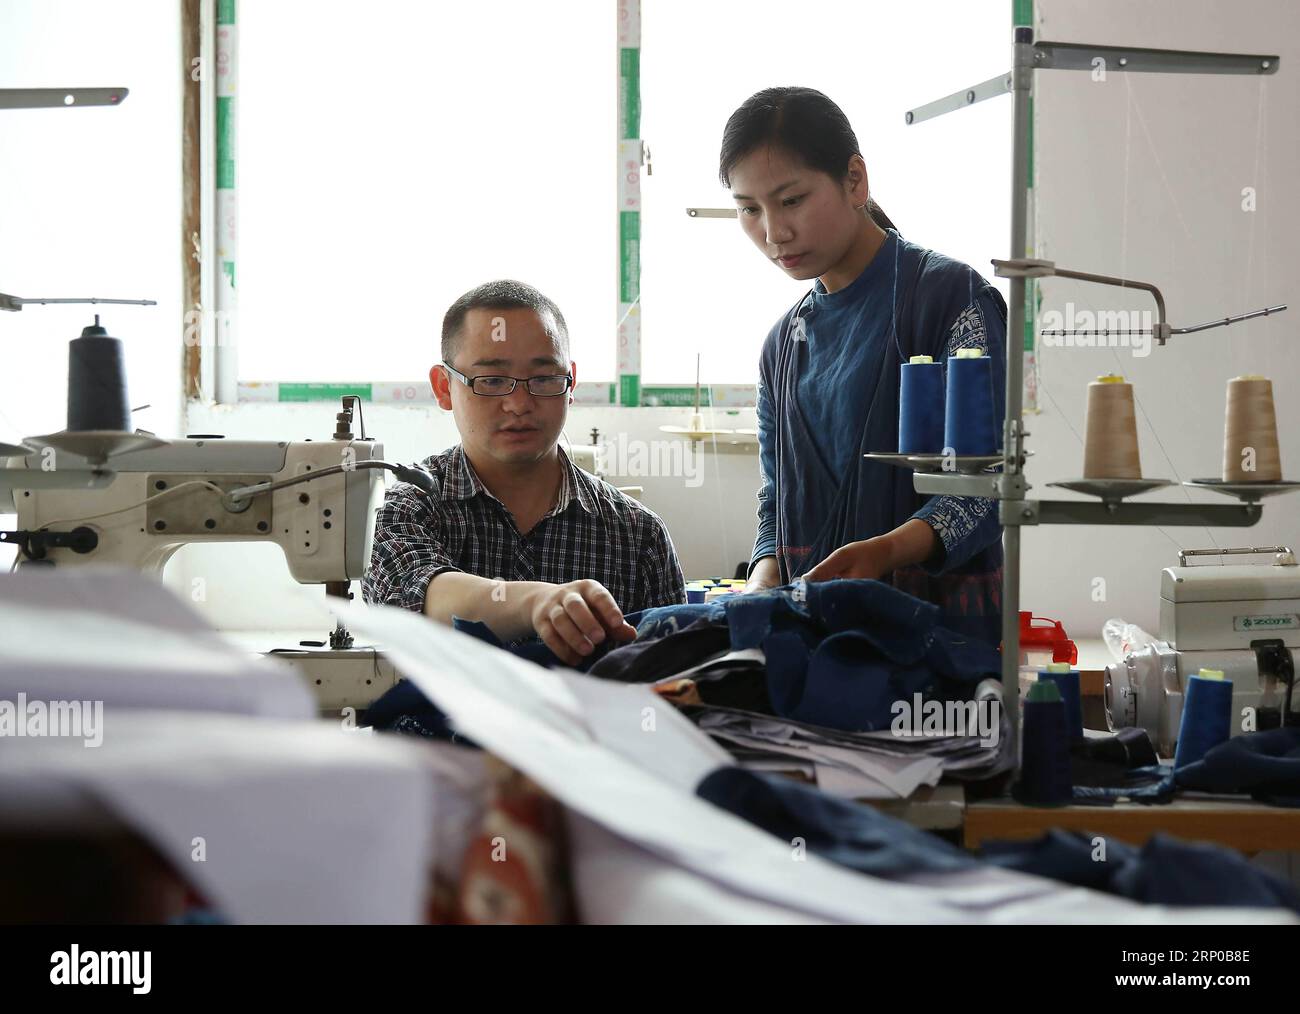 (180503) -- DANZHAI, 3 mai 2018 -- Zhang Yiping (à droite) discute de la production de vêtements batik avec son collègue dans le comté de Danzhai, dans la province du Guizhou du sud-ouest de la Chine, le 2 mai 2018. Obsédée par la culture batik depuis un enfant, Zhang Yiping, une jeune femme née en 1993, a démarré sa propre entreprise de créations batik dans sa ville natale de Danzhai en 2014. Grâce à plusieurs années de développement, Zhang a mis en place son magasin de batik et aussi une base de production artisanale où plus de 100 femmes locales étaient employées.) (Sxk) (zt) CHINA-GUIZHOU-DANZHAI-ENTREPRENEUR STORY (CN) HuangxXiaohai PUBLICATIONxNOTxINxCHN Banque D'Images